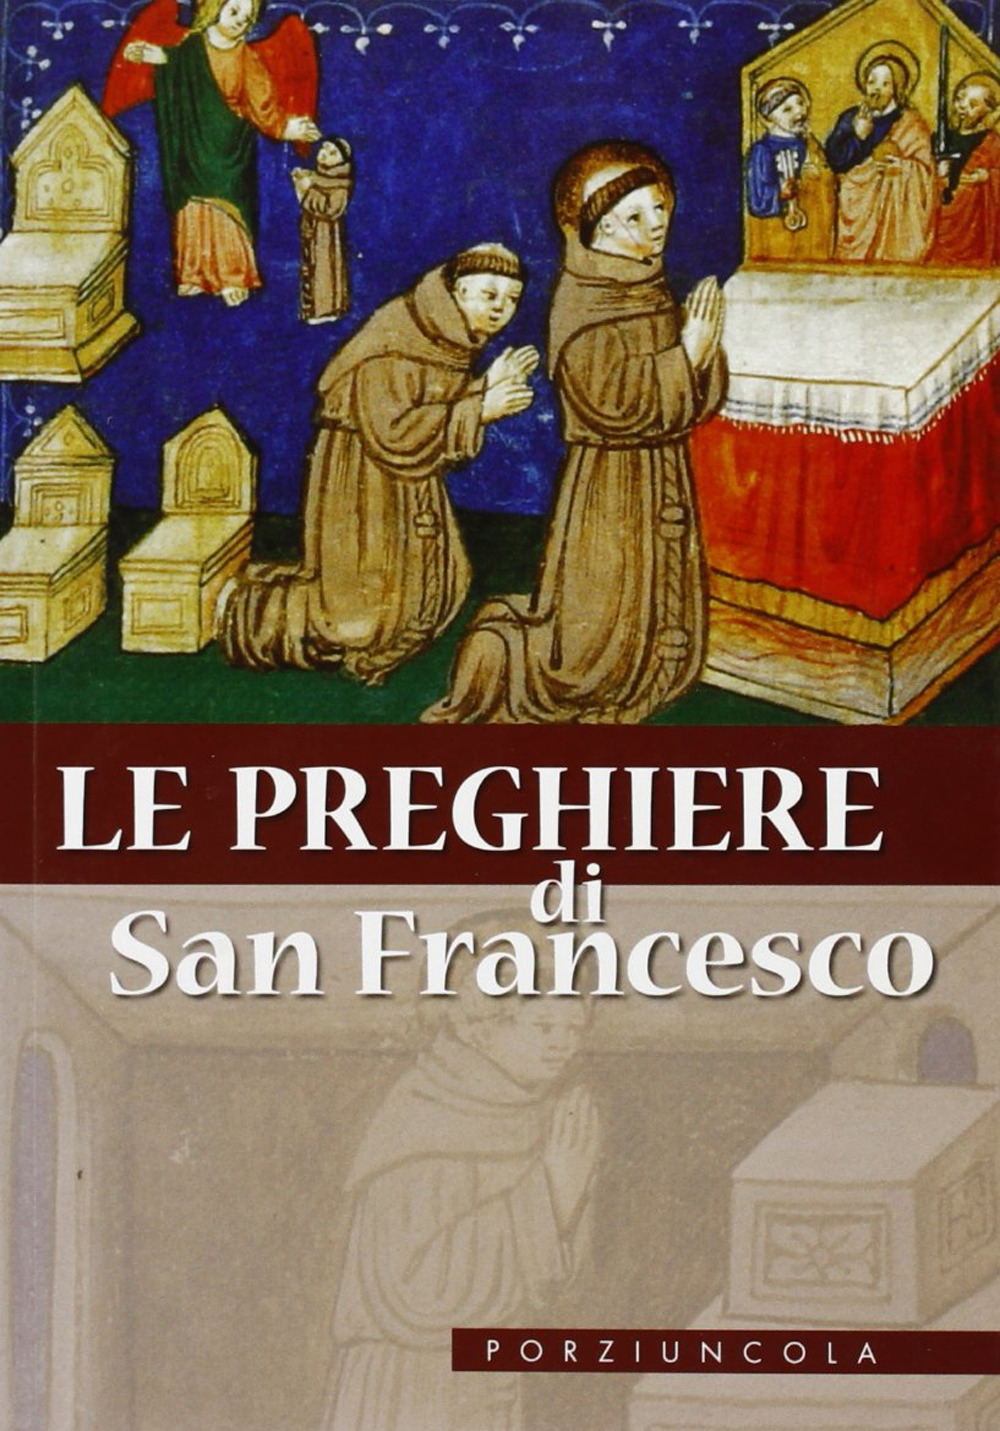 Image of Le preghiere di San Francesco